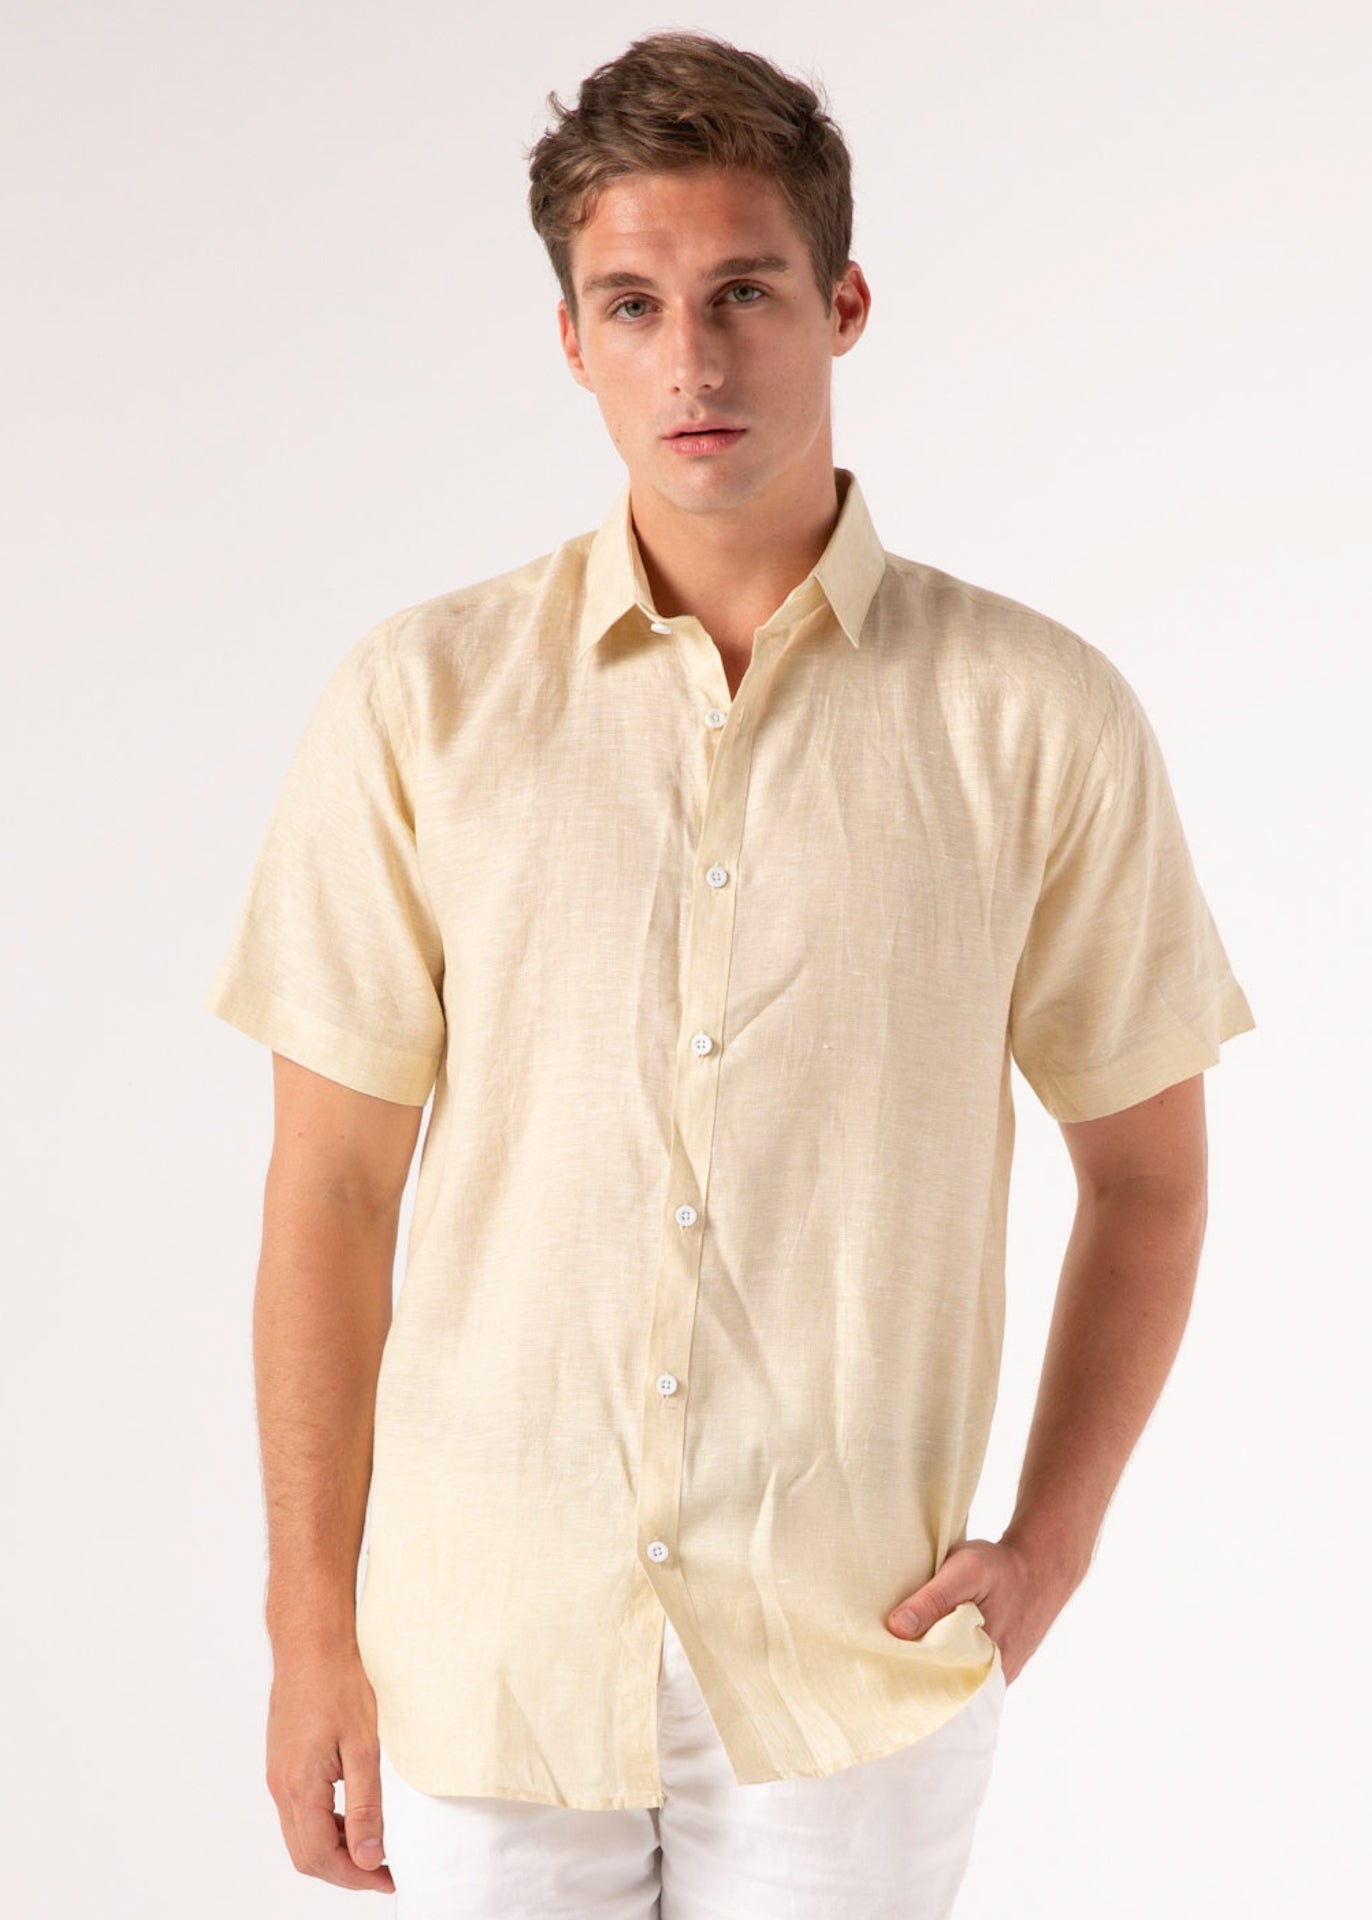 Aurum - Short Sleeve Italian Linen Shirt - Mr. Linen Co Mr. Linen CO